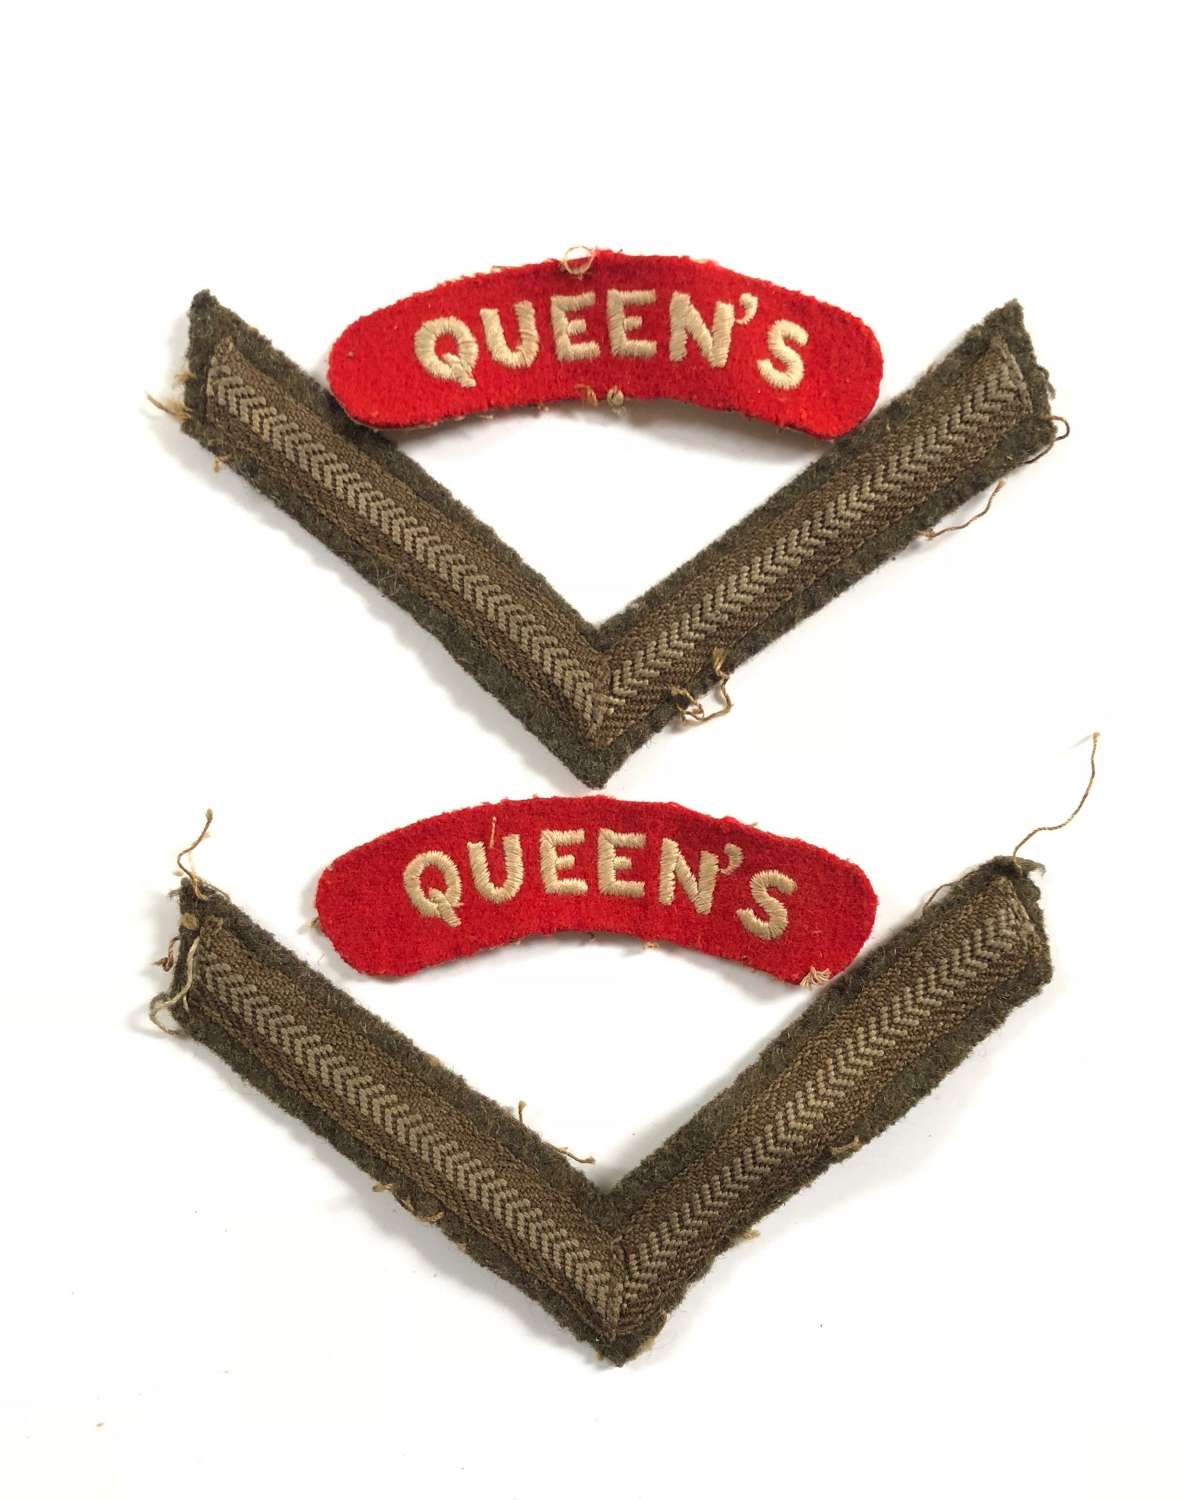 WW2 / Korea War Period Queen’s Regiment Cloth Shoulder Titles Badge.